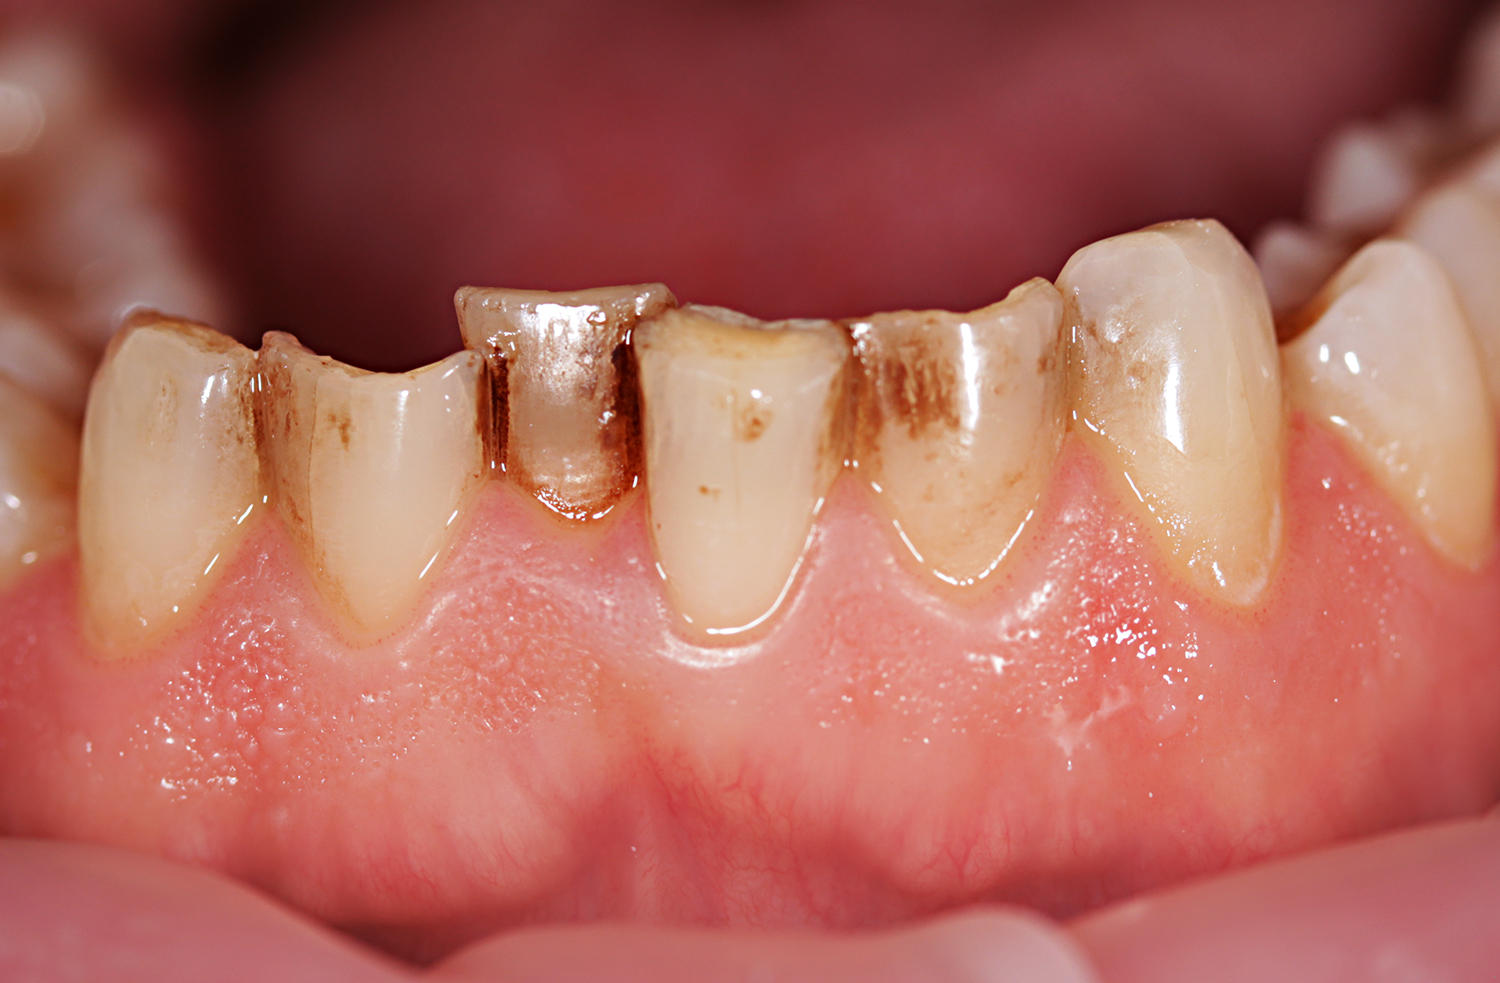 Какой стоматолог что лечит? Полезная информация для пациентов клиники Smile-at-Once